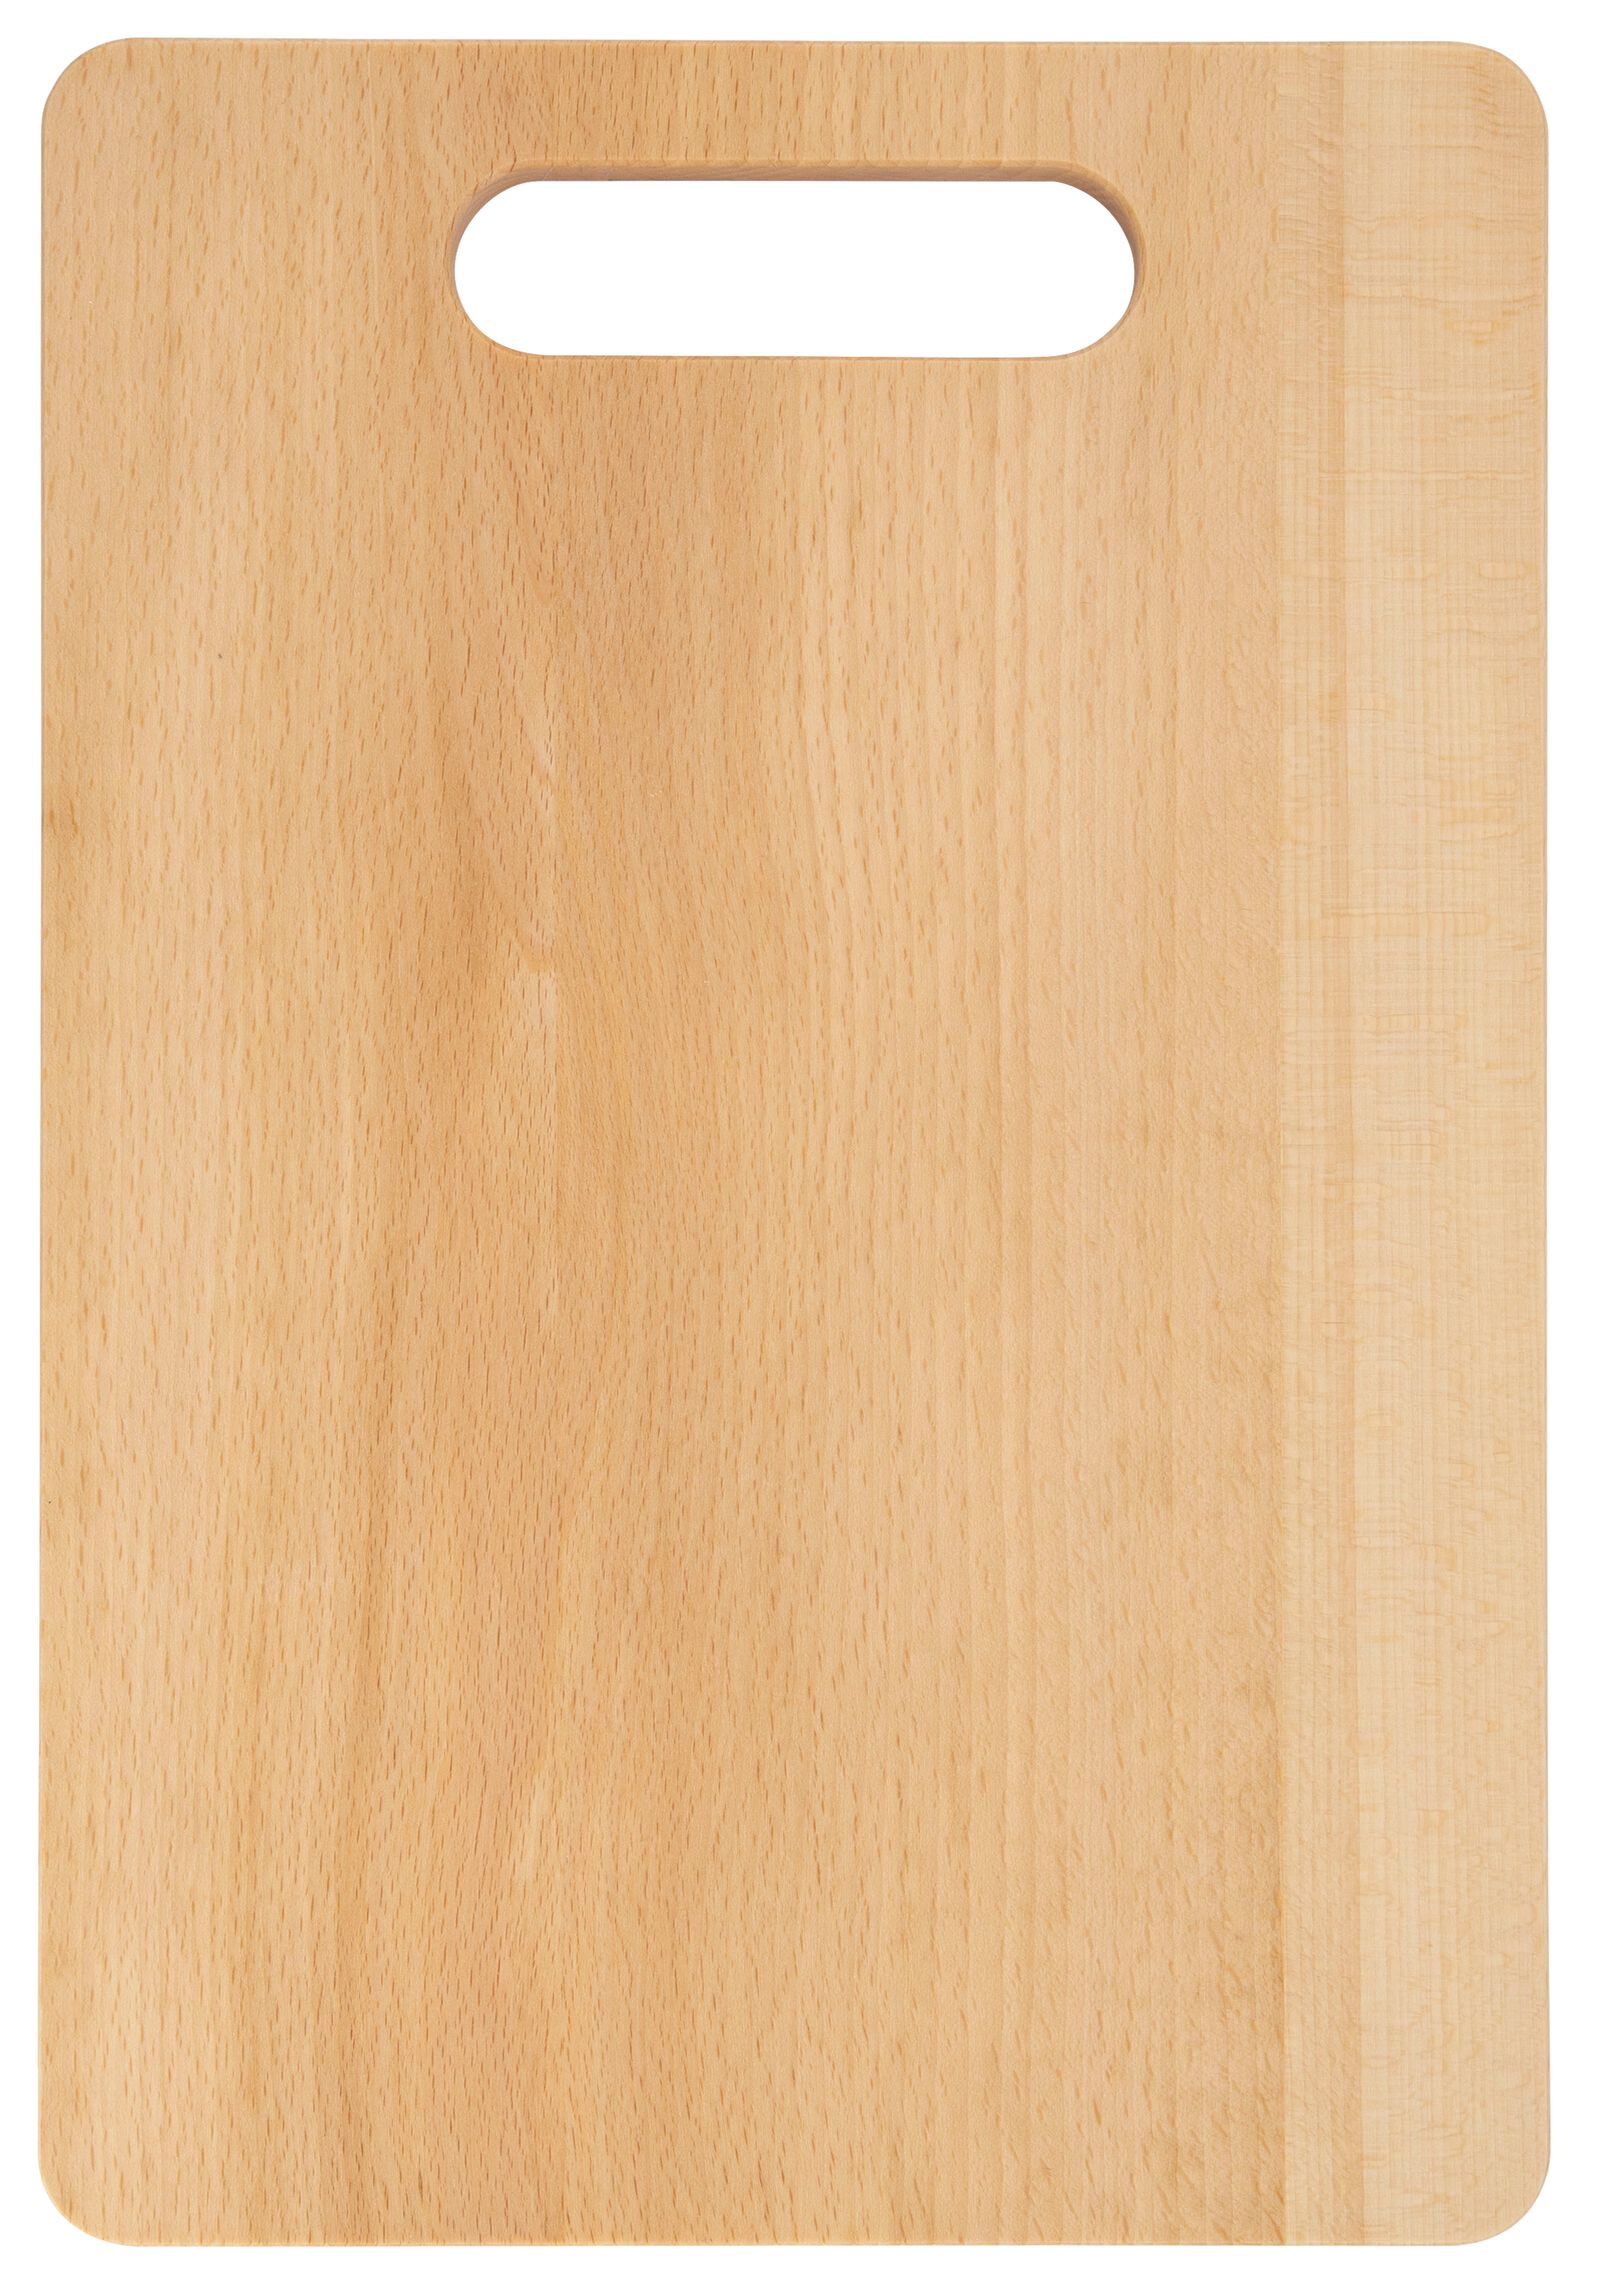 hema planche à découper 24x35x1.5 bois de hêtre (bois)